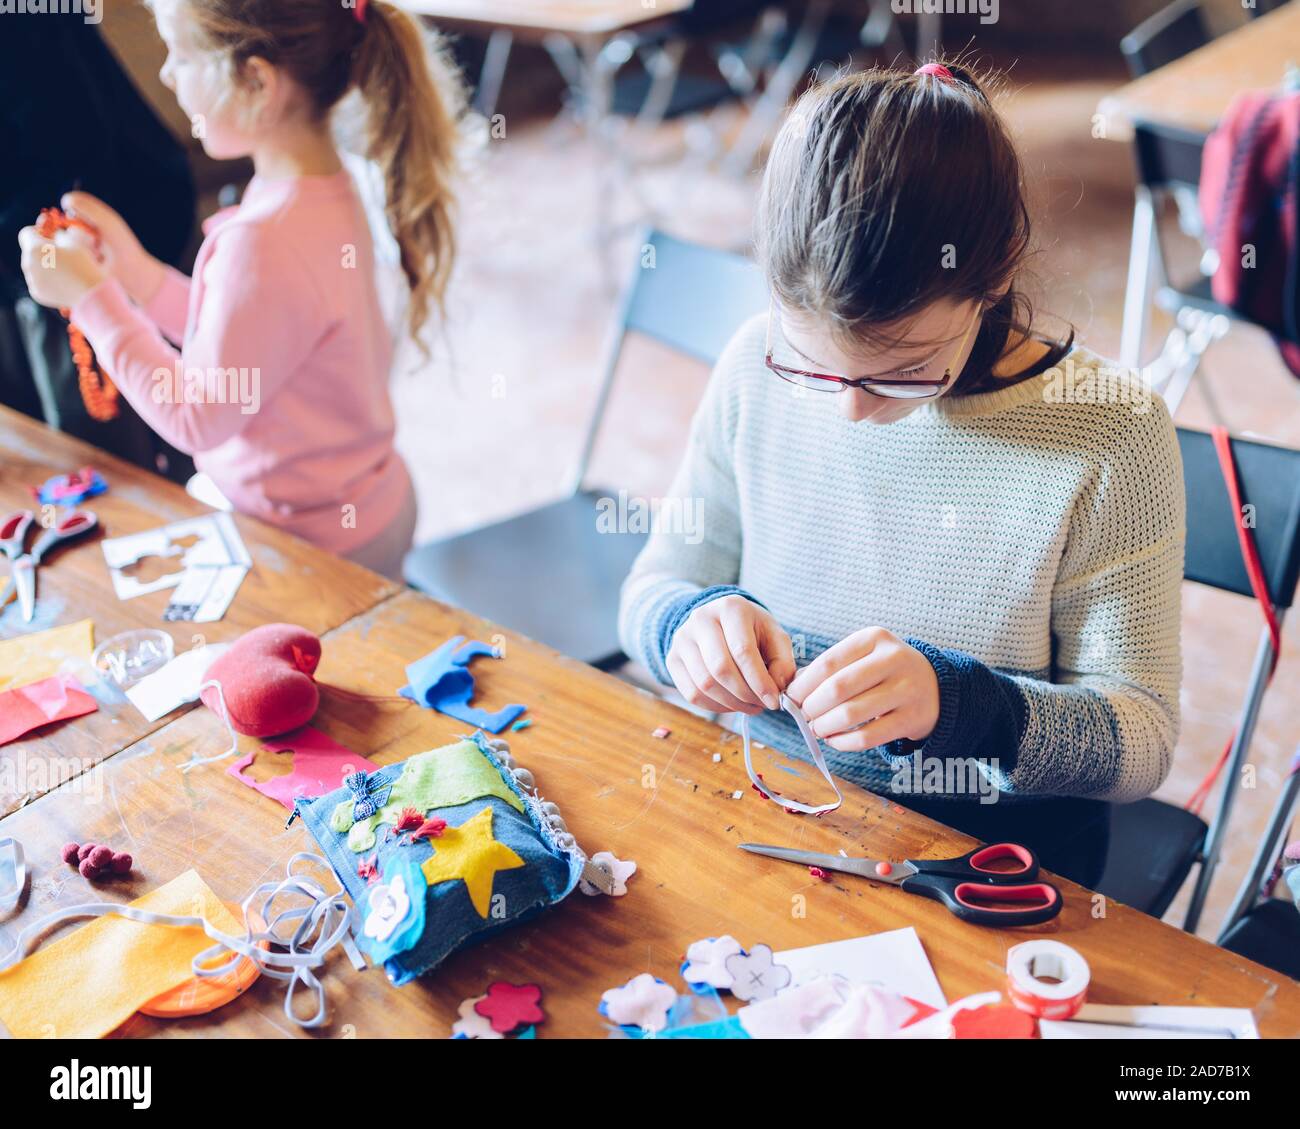 Kunst Workshops speziell für Kinder - ein Mädchen nähen fühlte Dekorationen Stockfoto